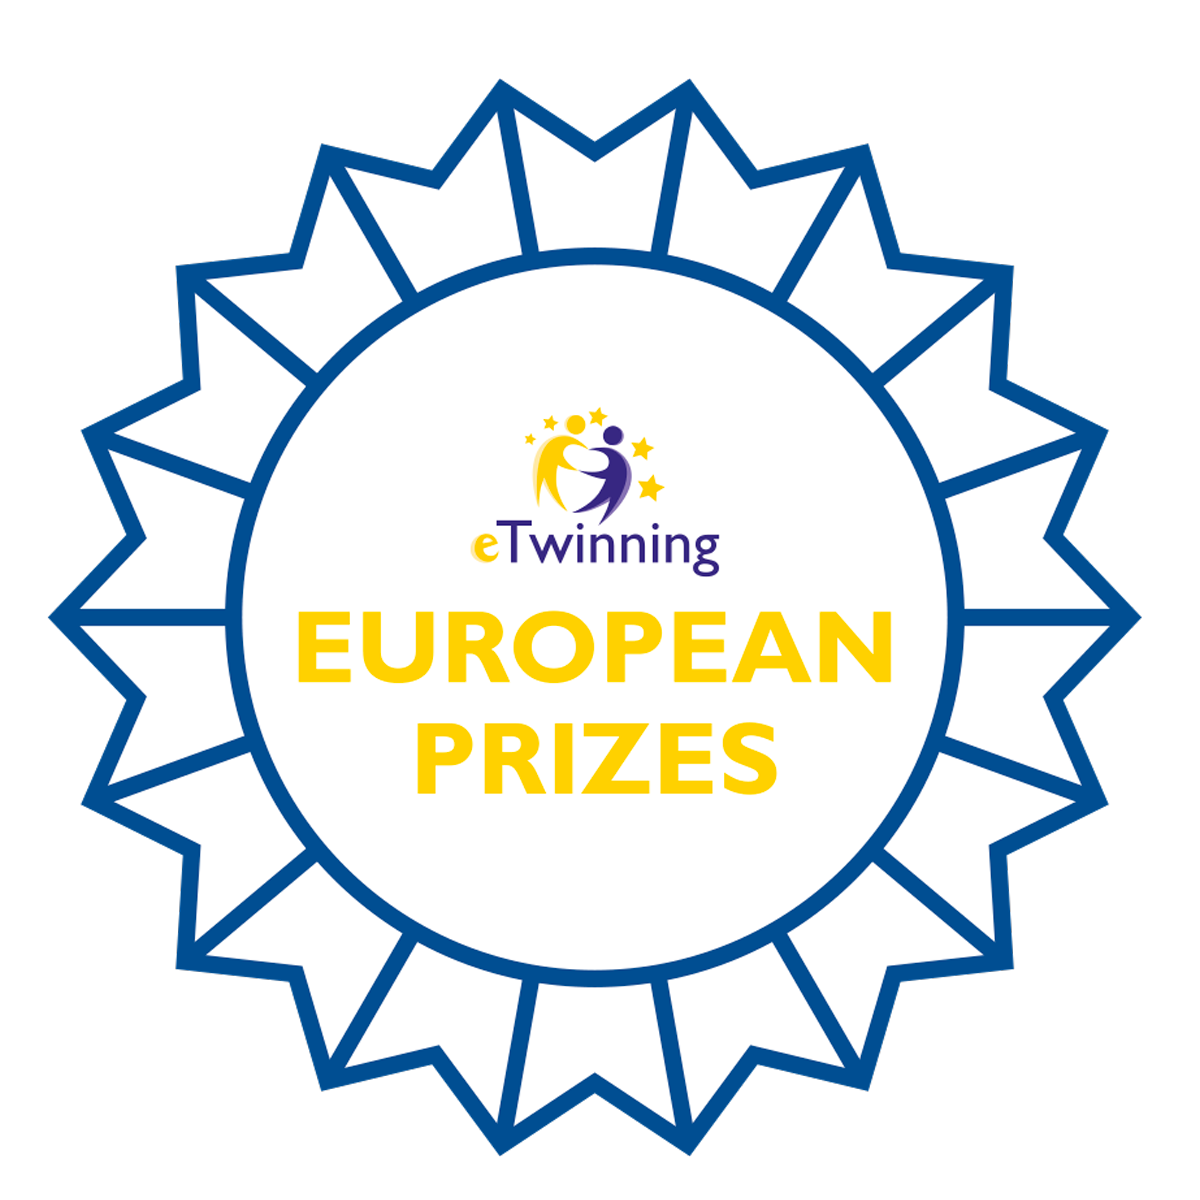 Ganadores de los Premios Europeos eTwinning 2019